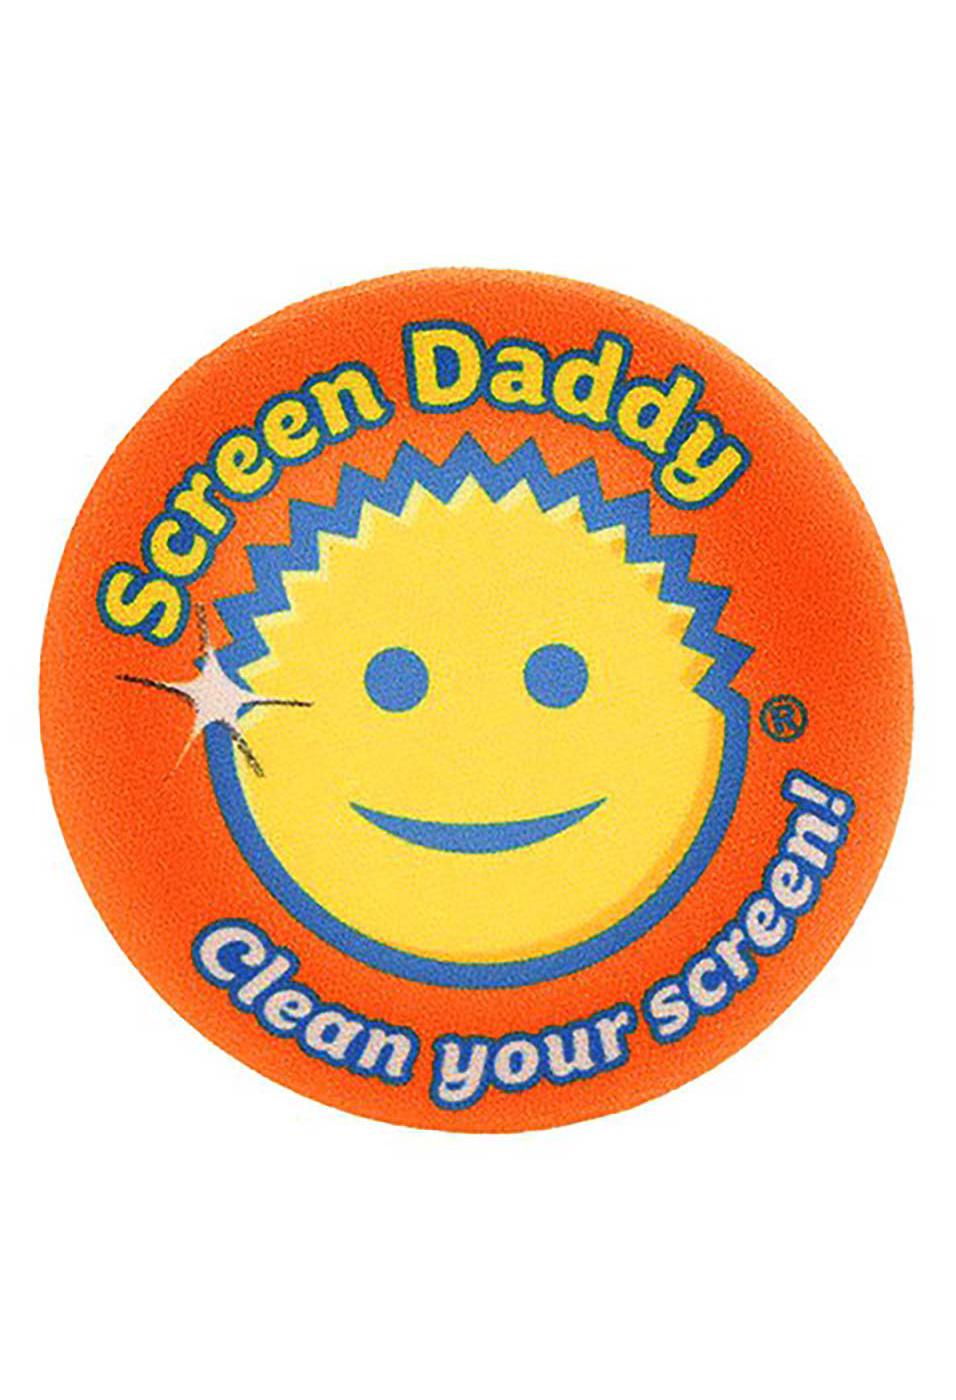 Scrub Daddy Microfiber Cloths - 2 count